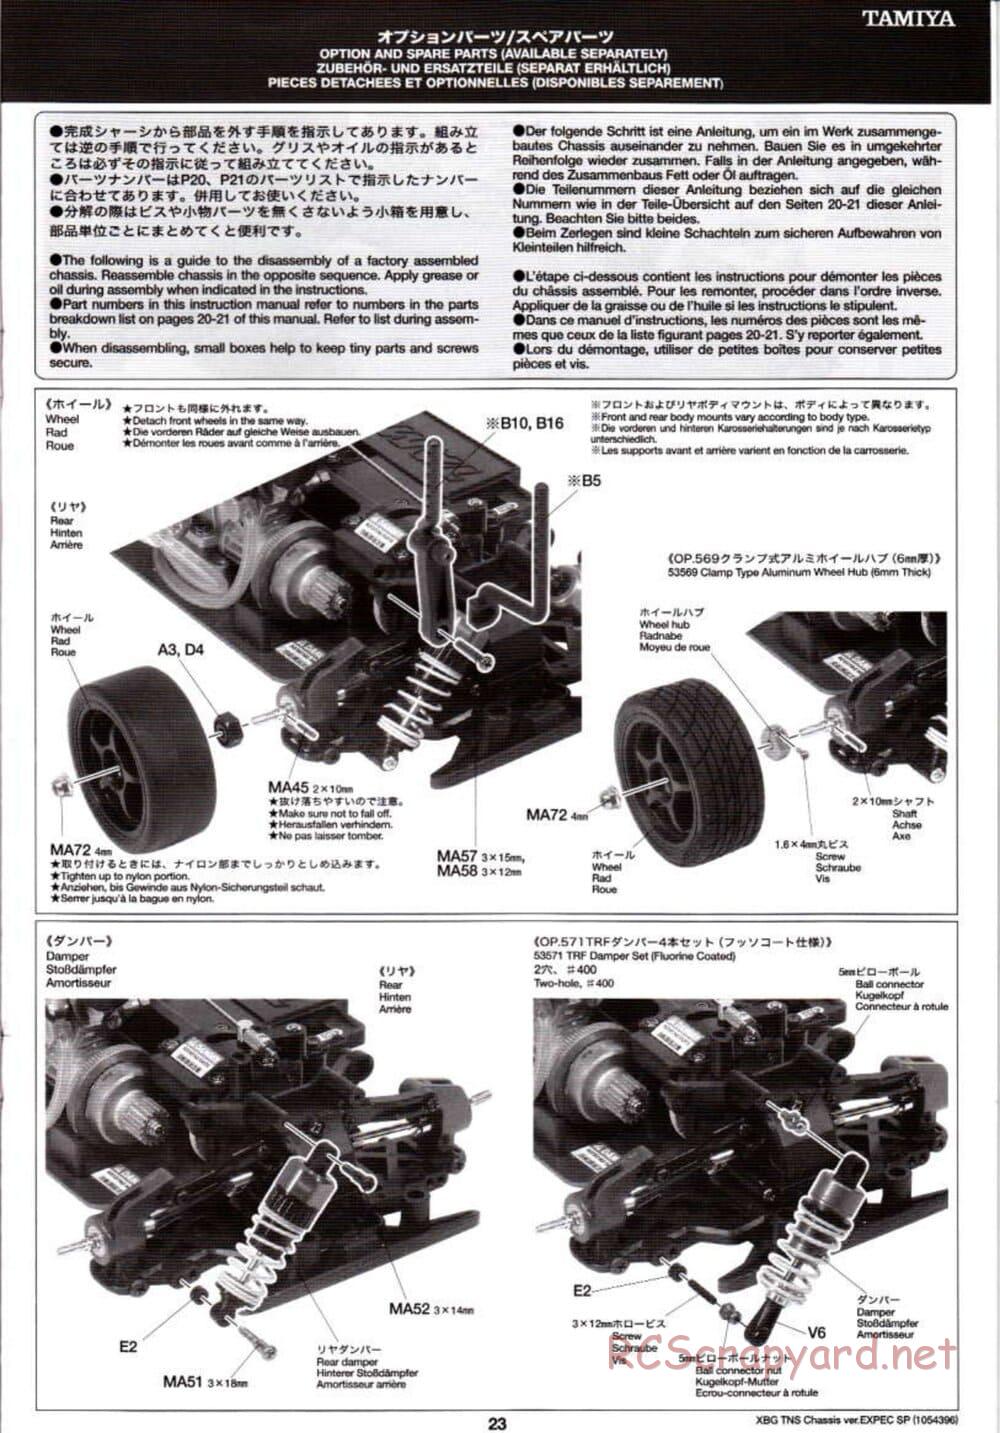 Tamiya - TNS Chassis - Manual - Page 23